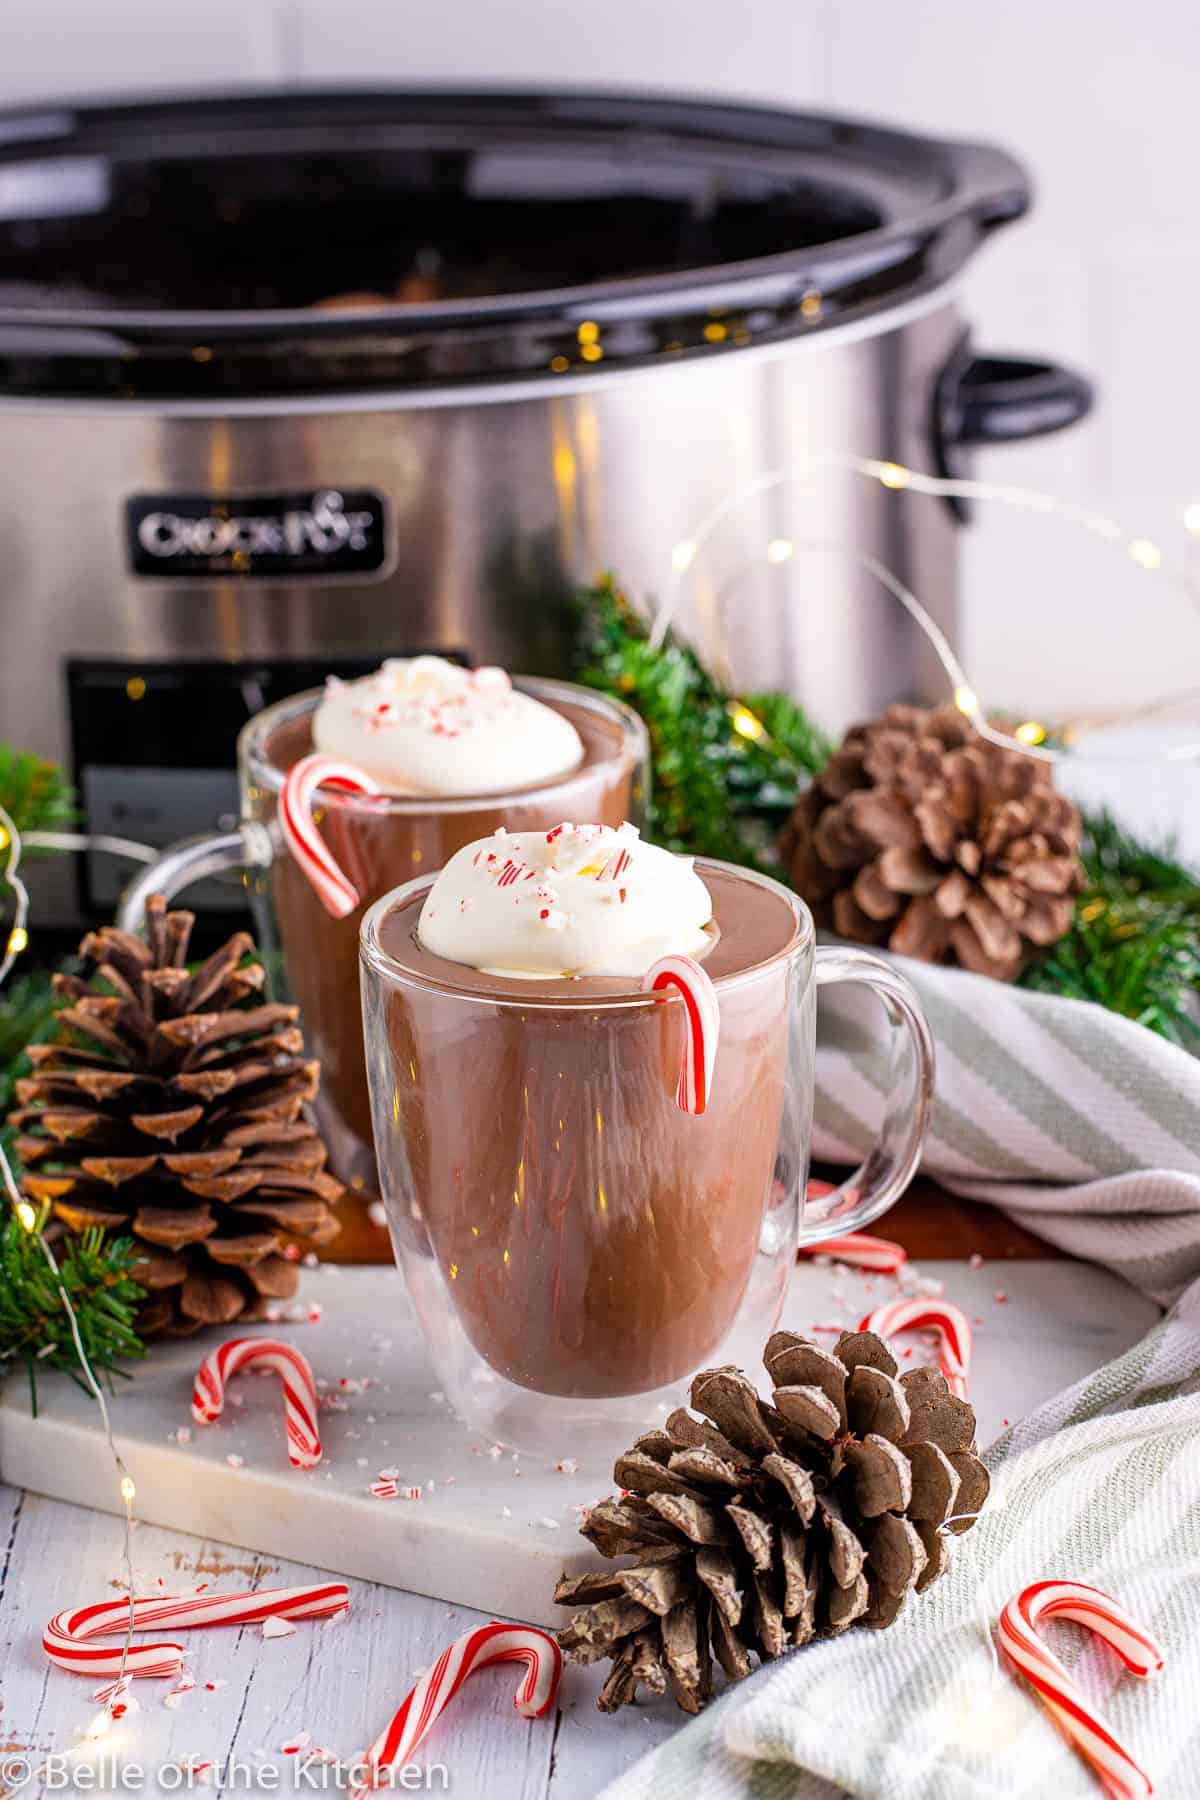 polar express hot chocolate next to a crockpot